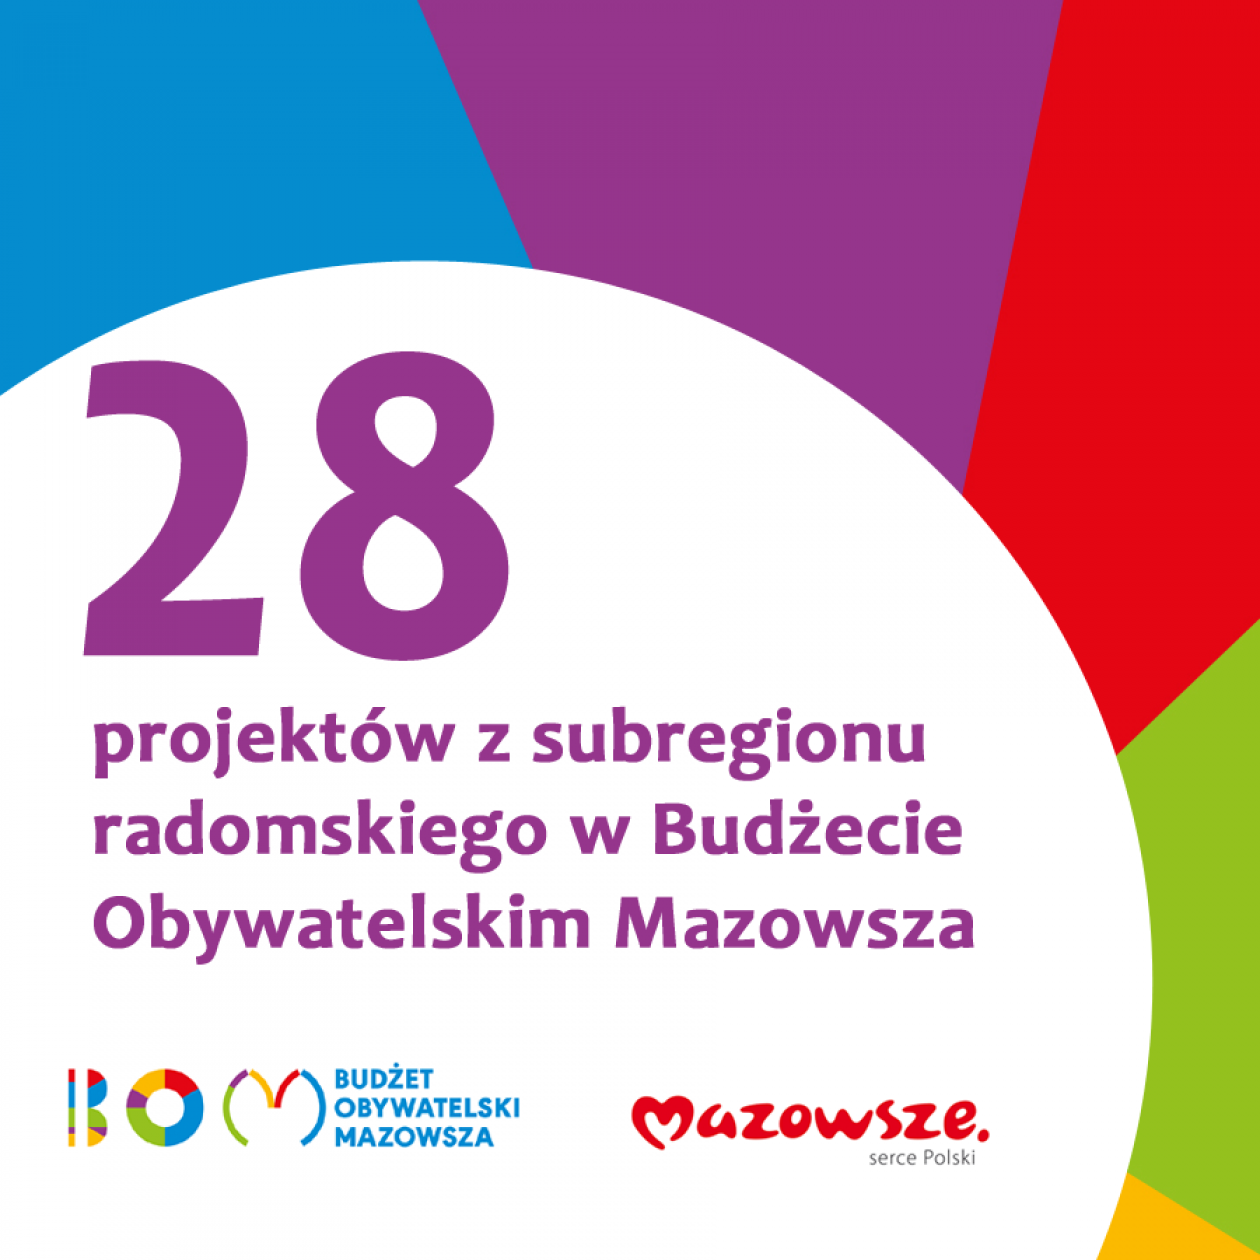 28 projektów z subregionu radomskiego w BO Mazowsza